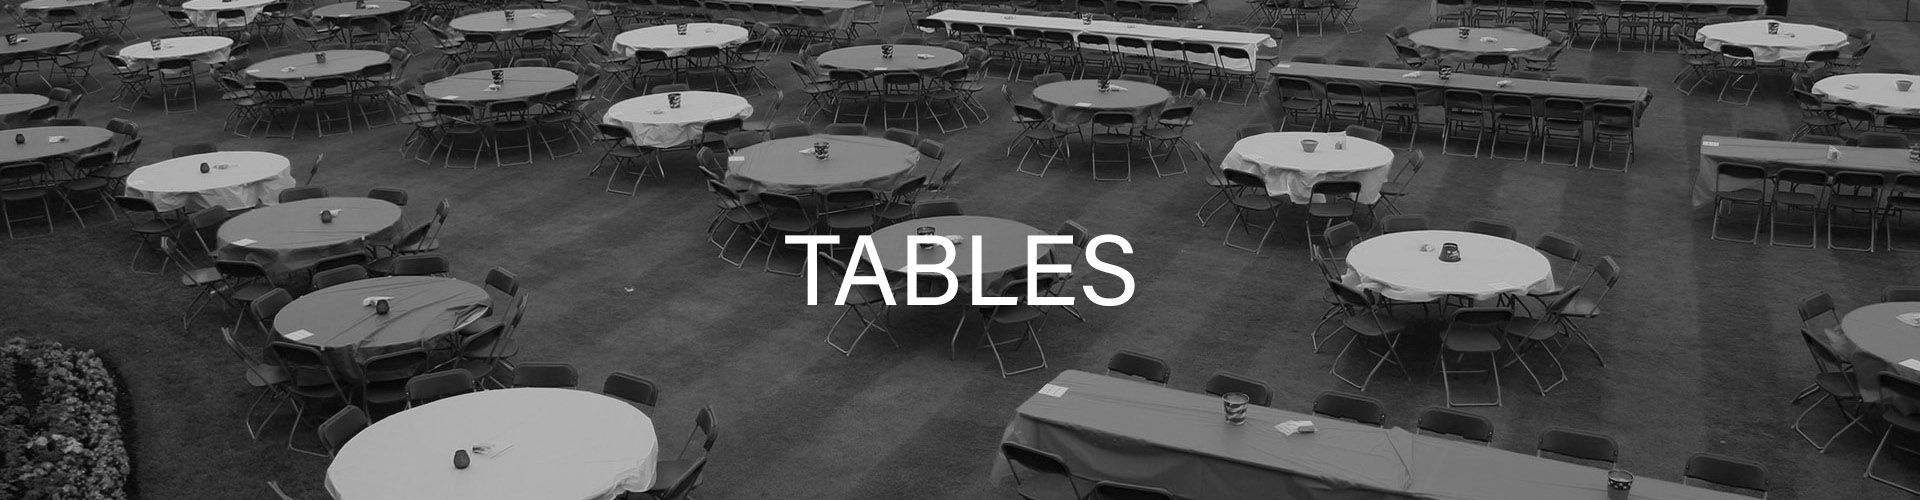 TABLSE.jpg